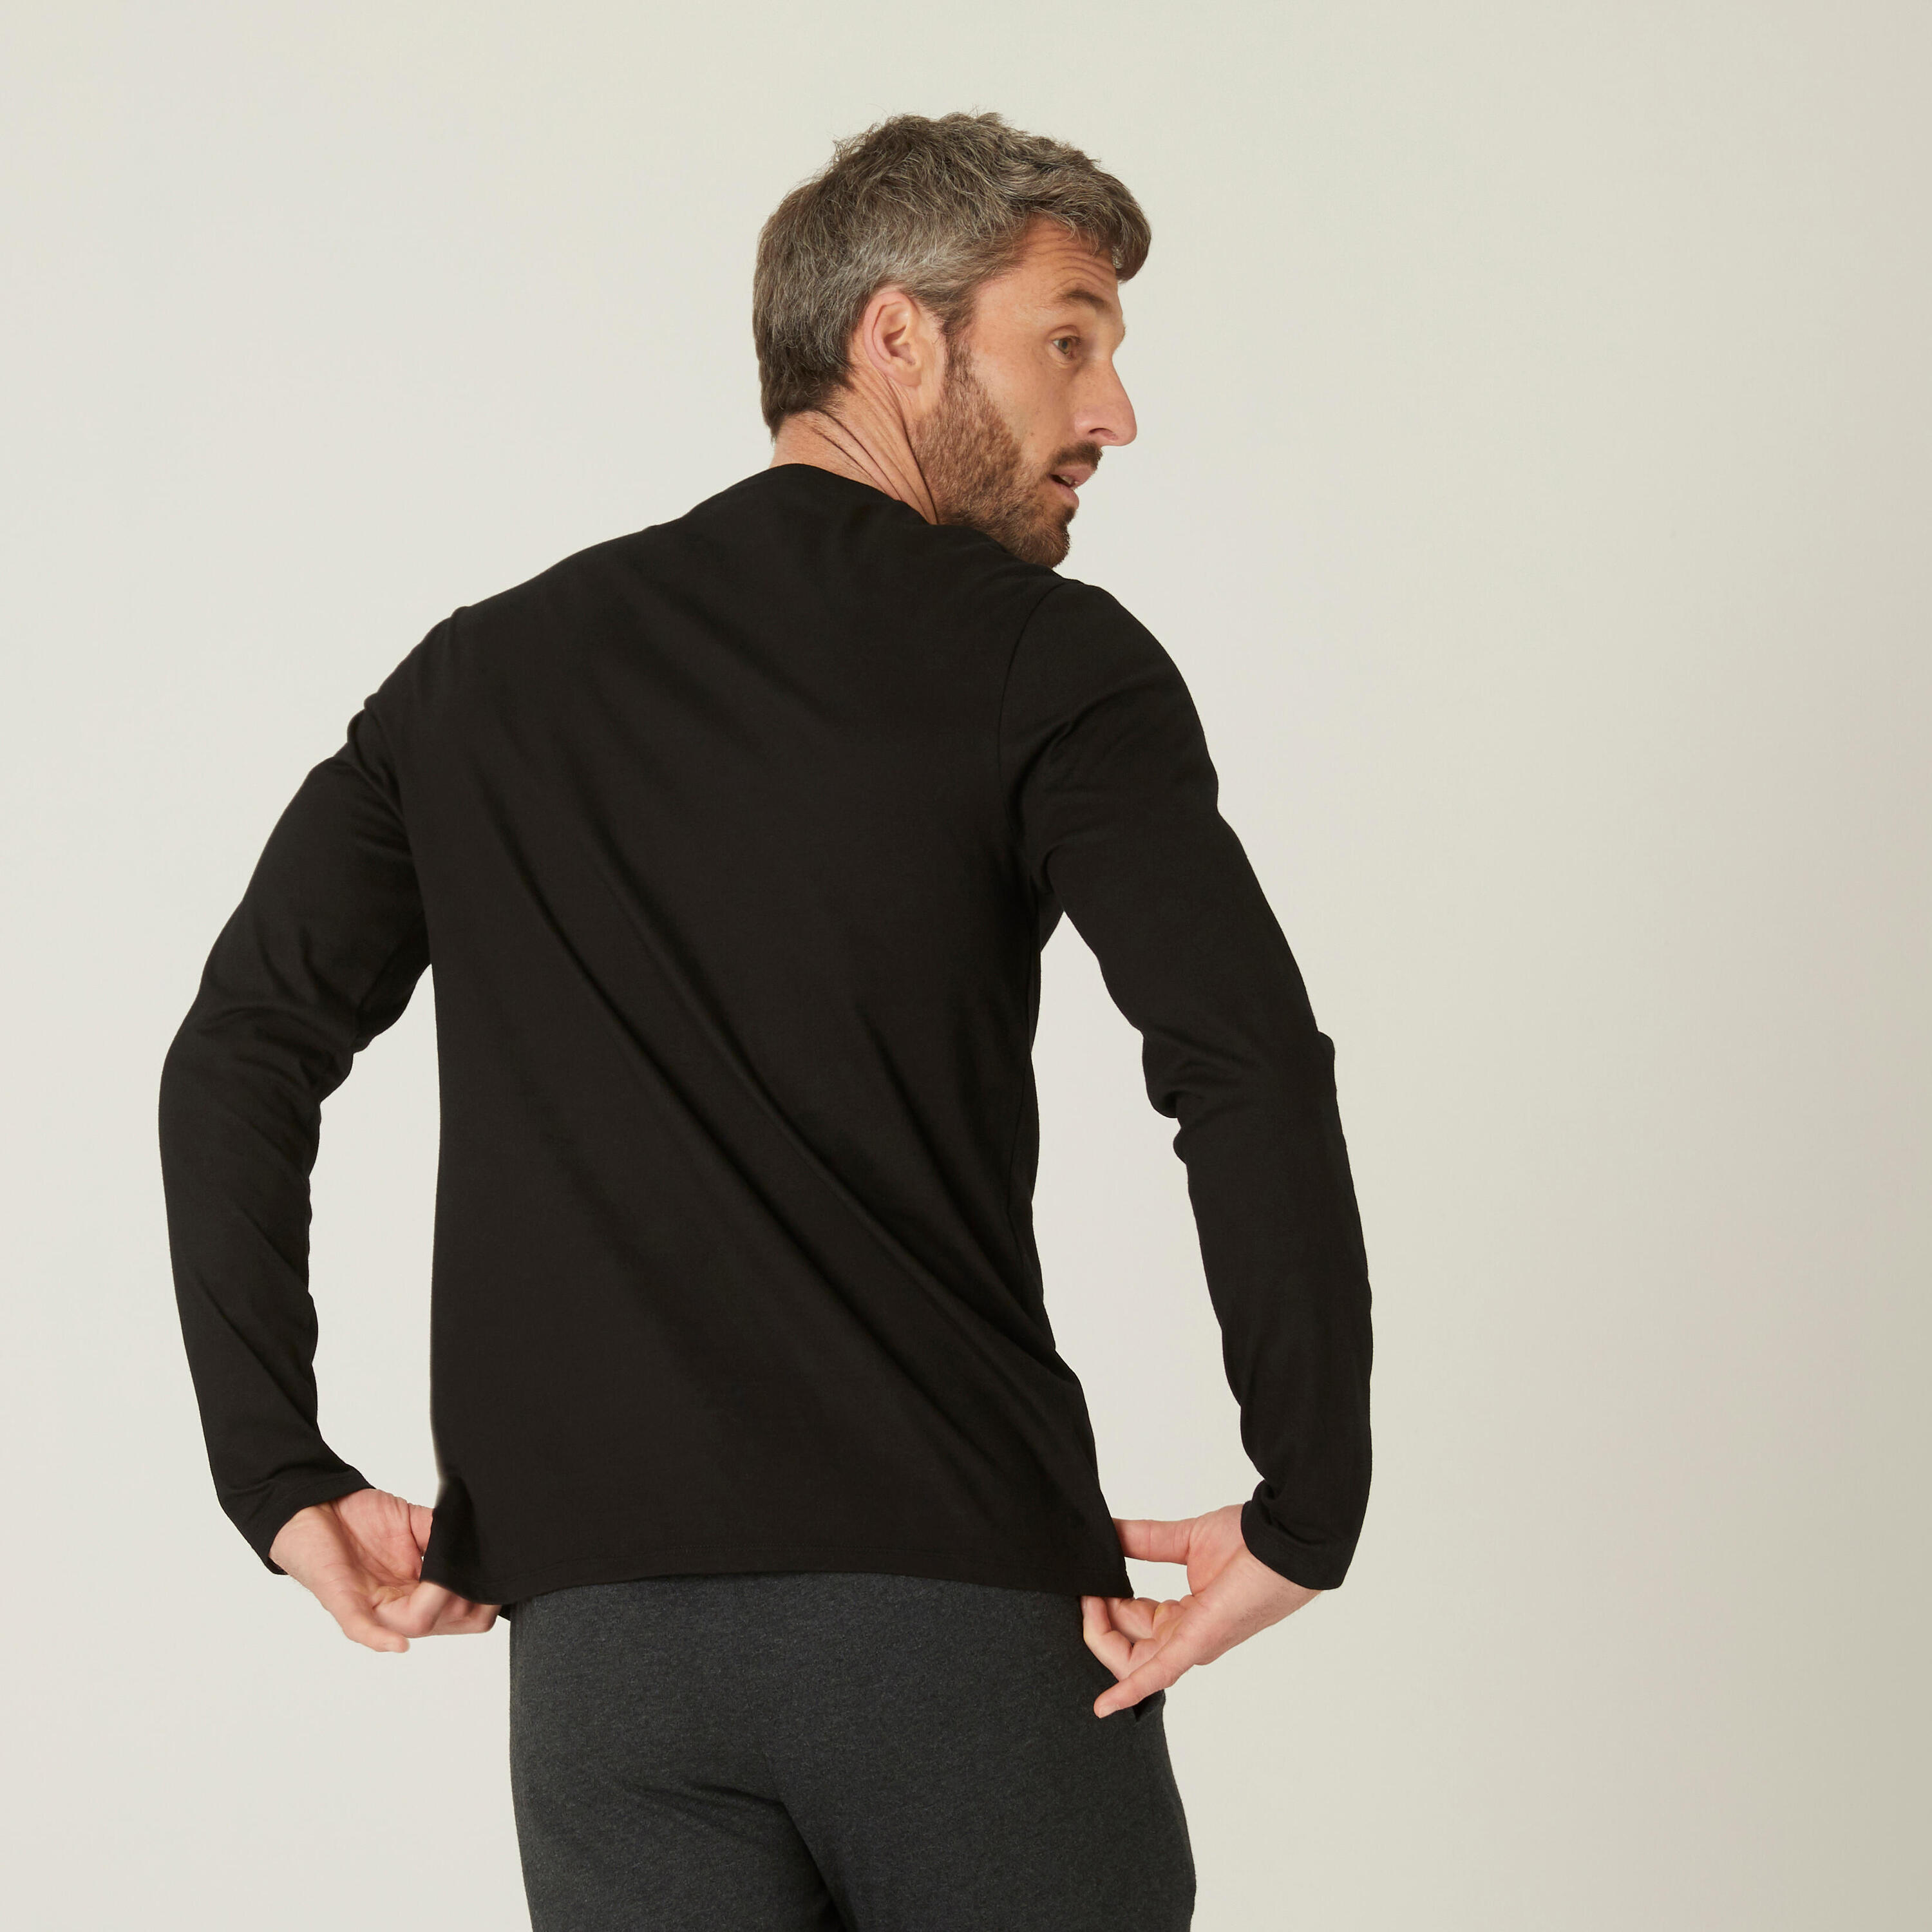 Men's Long-Sleeved Fitness T-Shirt 100 - Black 2/4